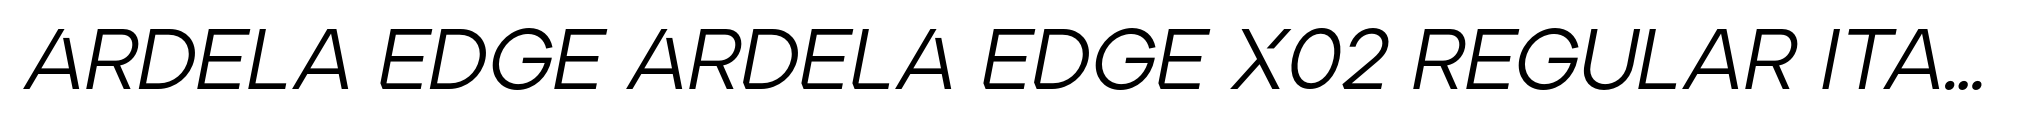 Ardela Edge ARDELA EDGE X02 Regular Italic image